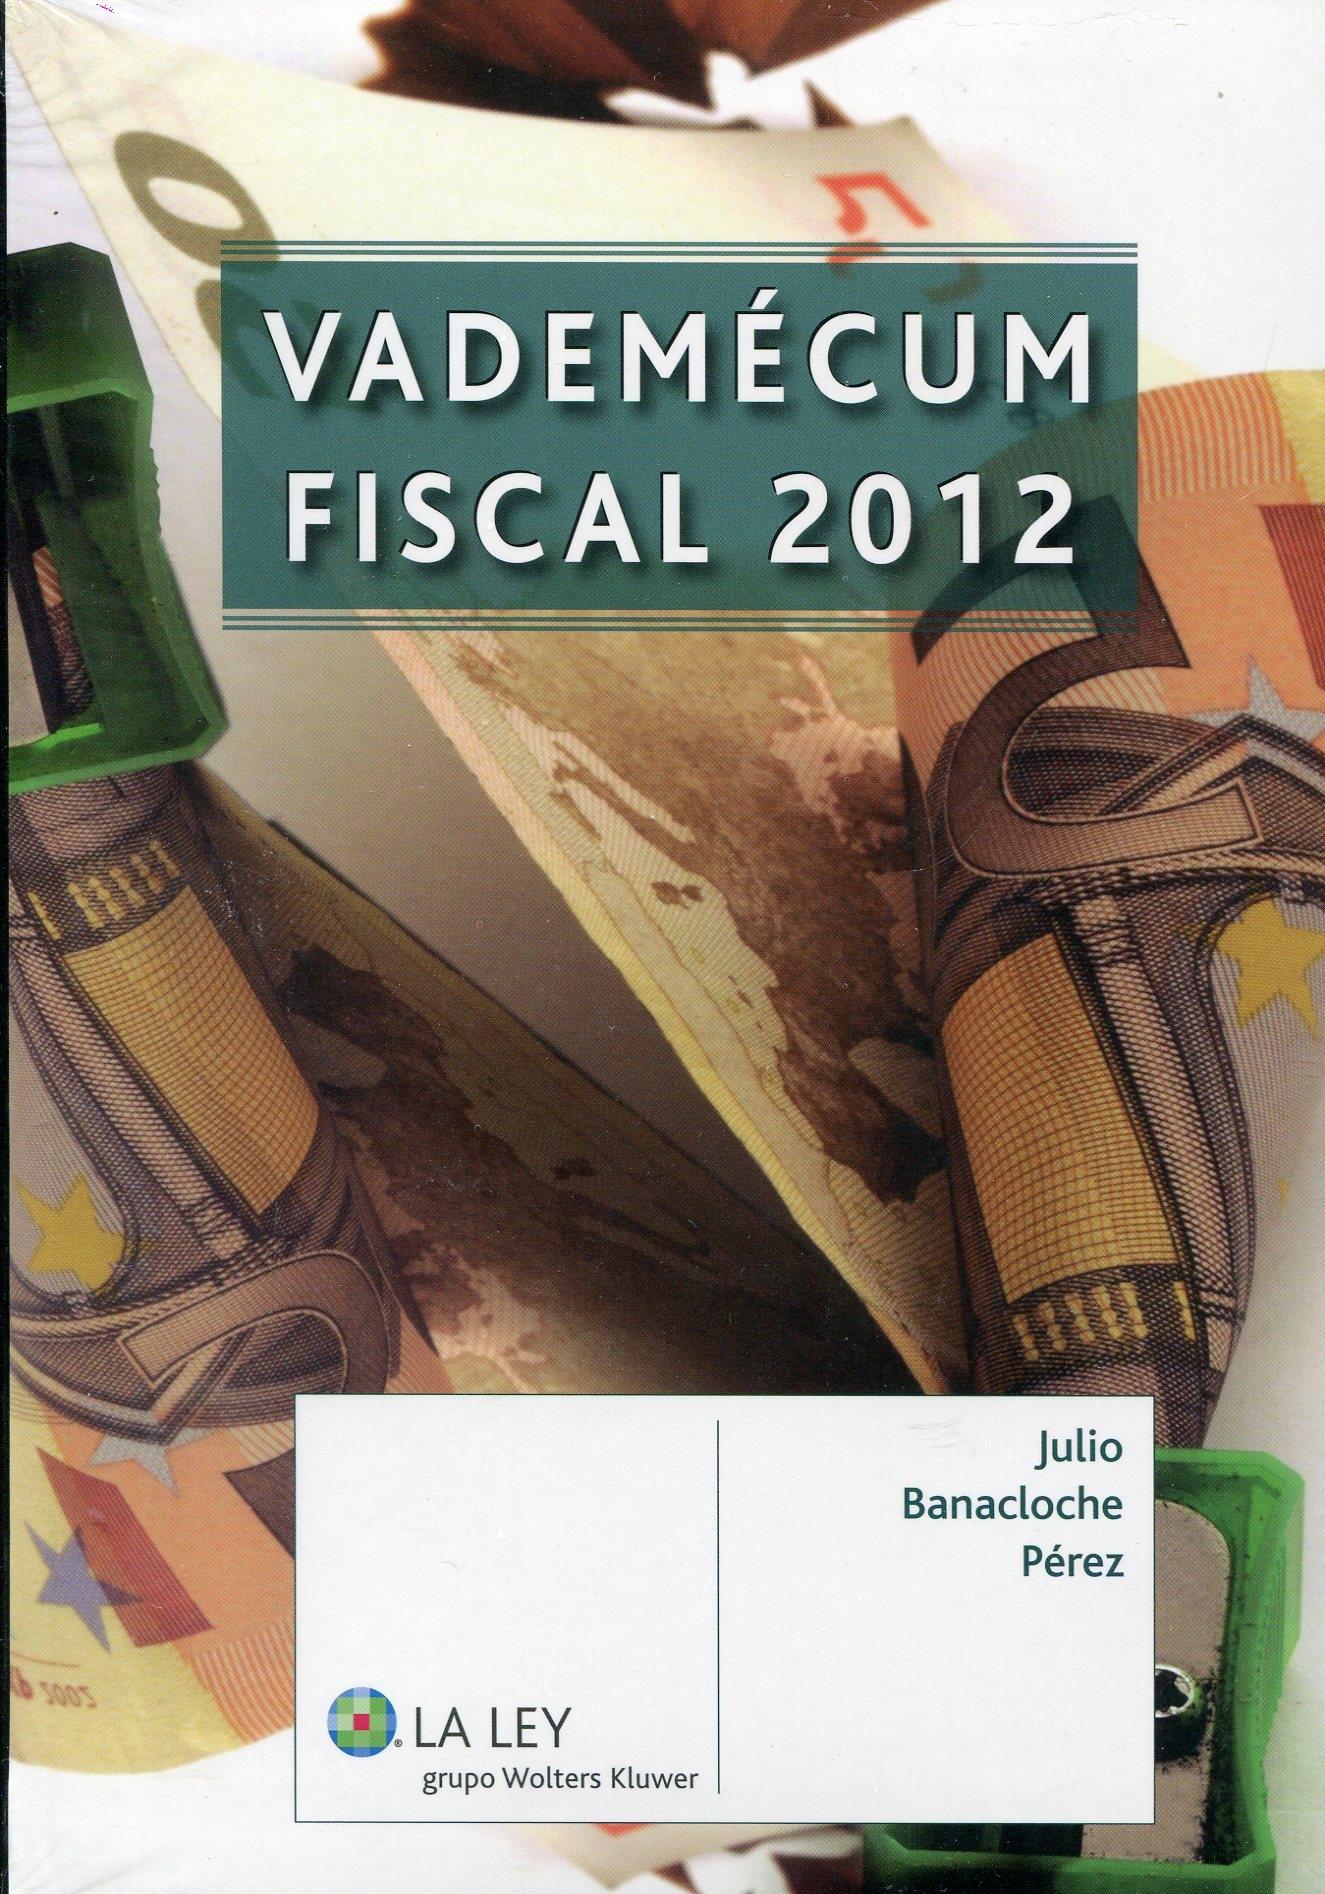 Vademecum fiscal 2012